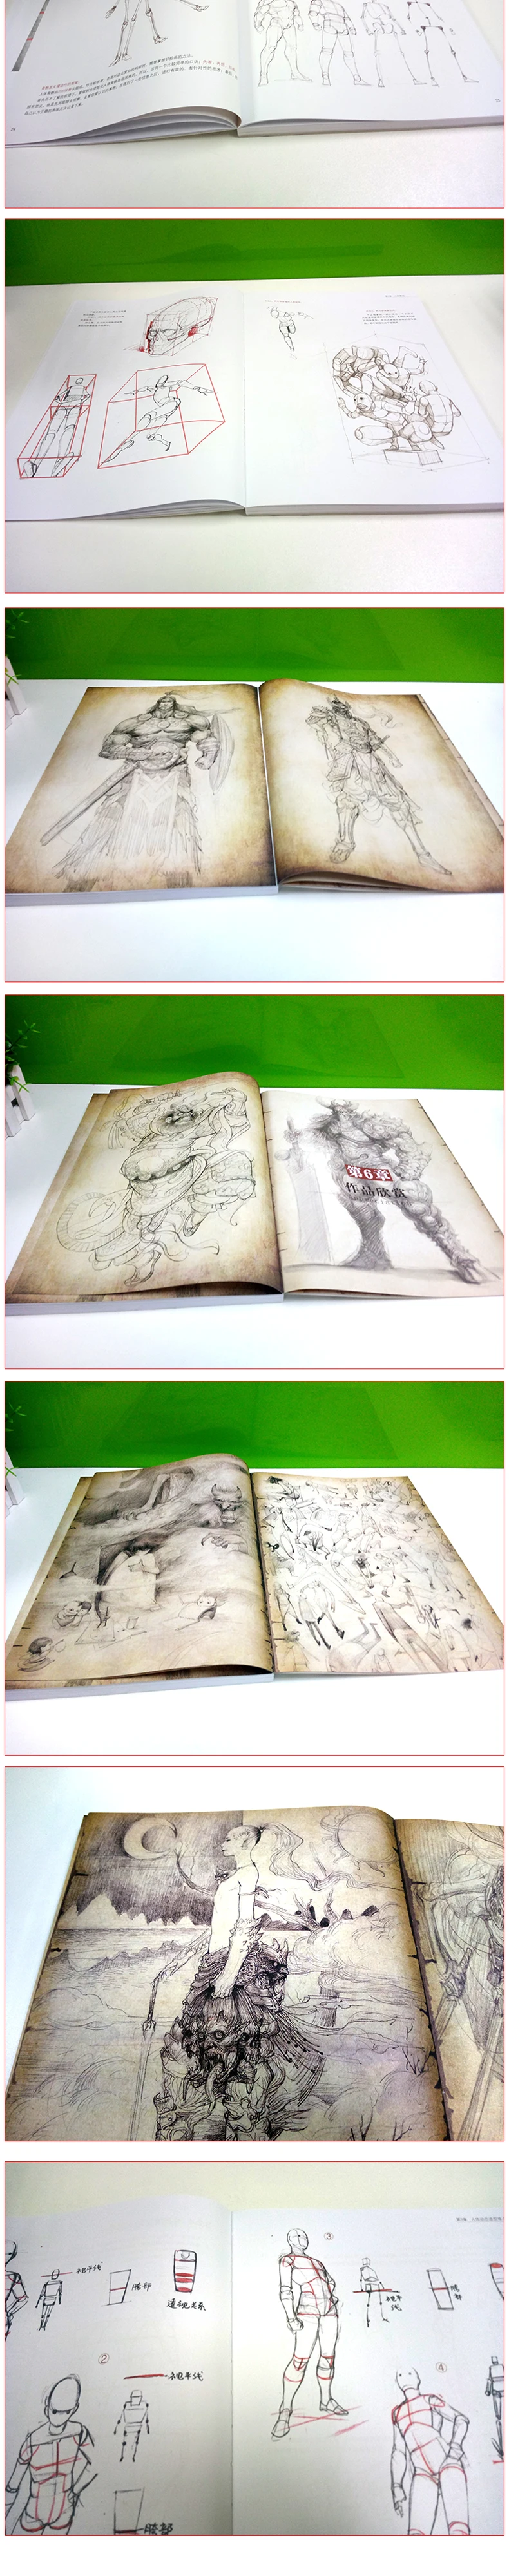 Новая горячая игра Аниме структура тела моделирование ручная роспись техника эскиз книга запись нулевой основе самоисследование